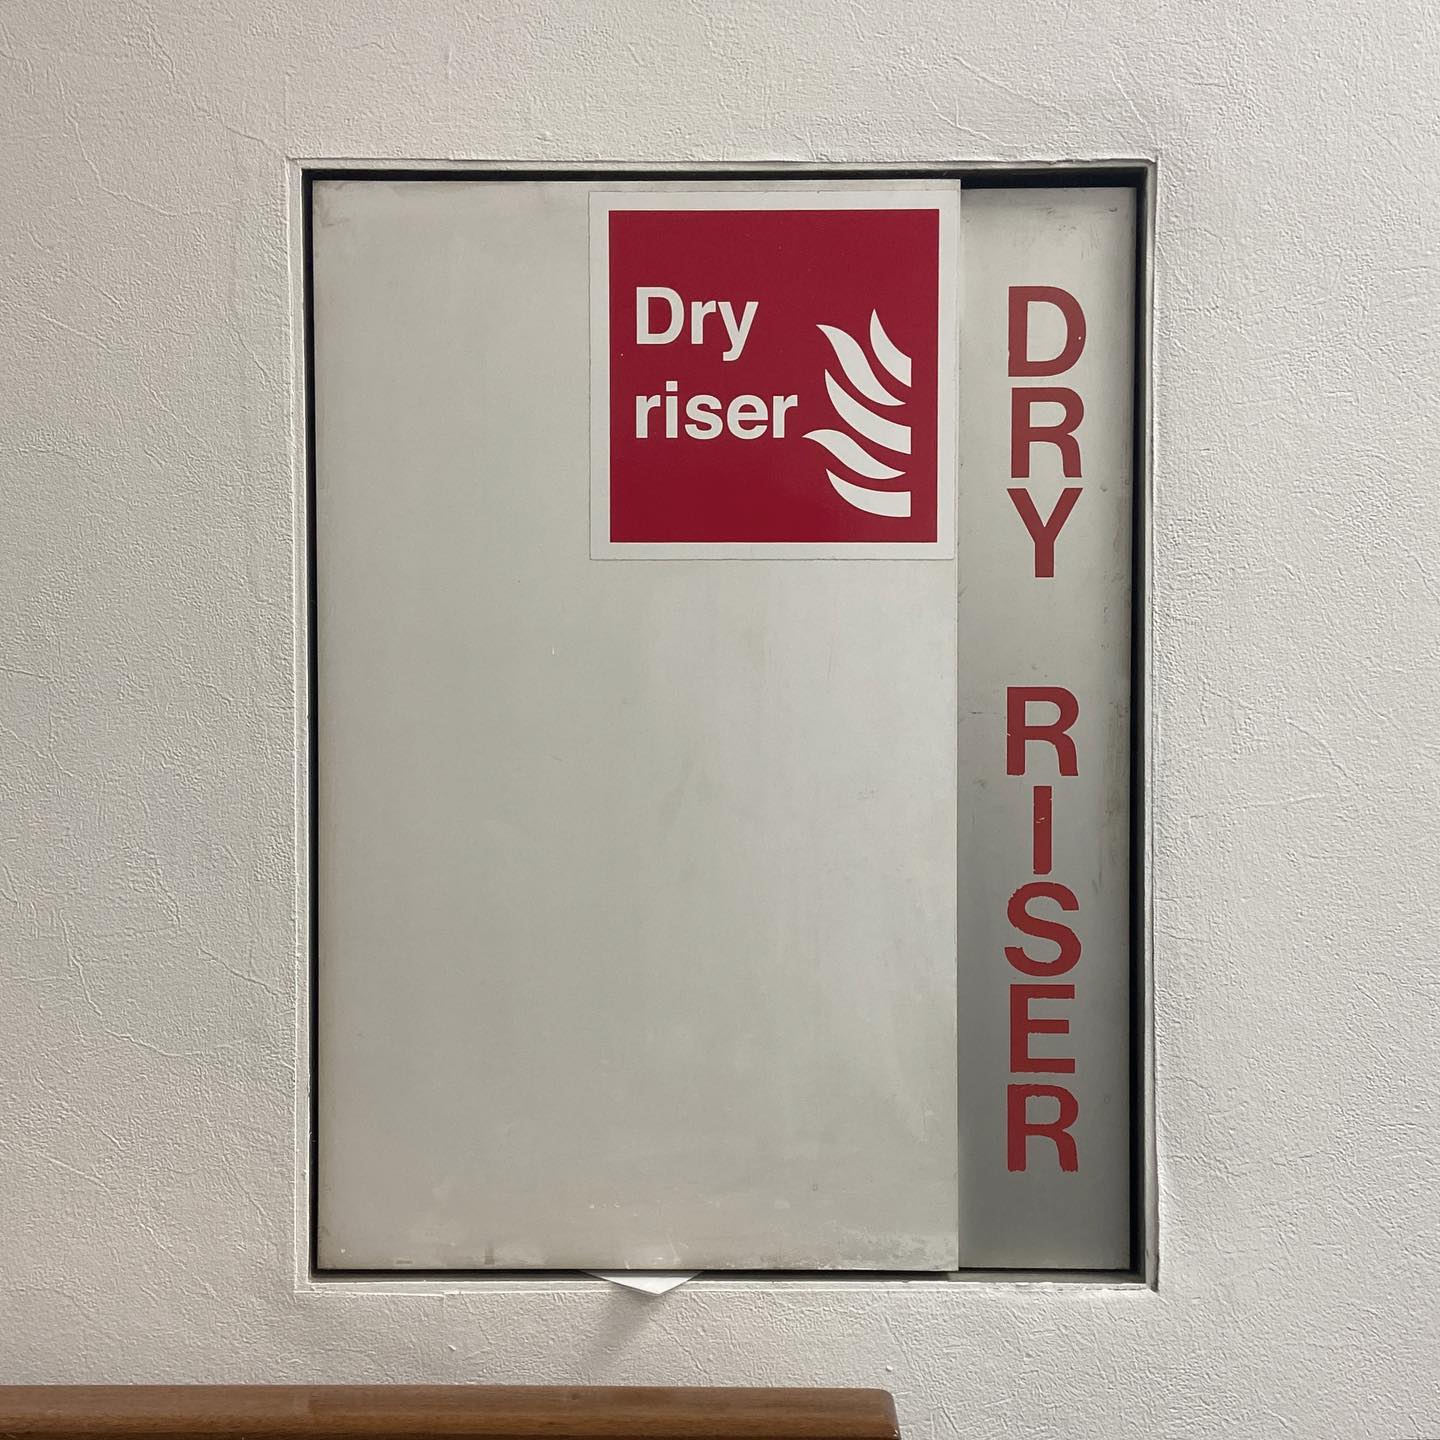 Dry riser (flames) D R Y R I S E R